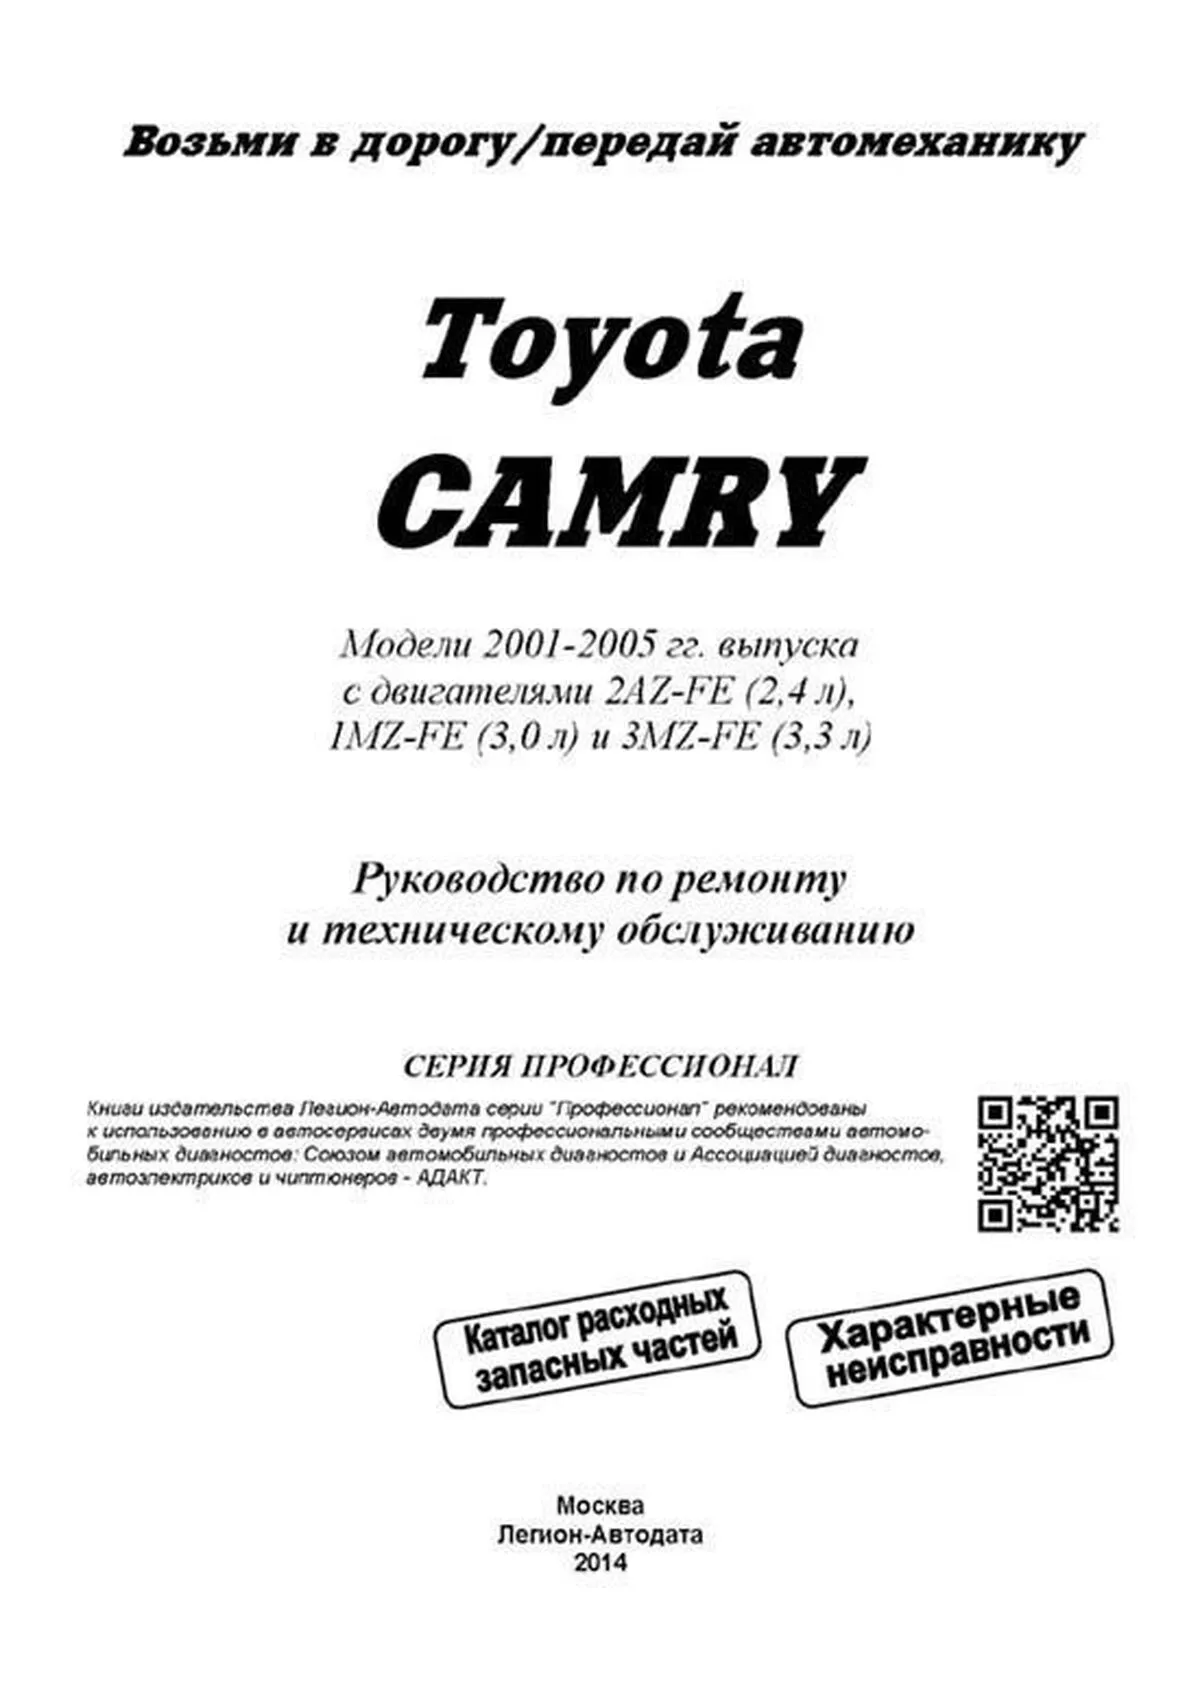 Книга: TOYOTA CAMRY (б) 2001-2005 г.в., рем., экспл., то + каталог расходных запчастей, сер.ПРОФ. | Легион-Aвтодата